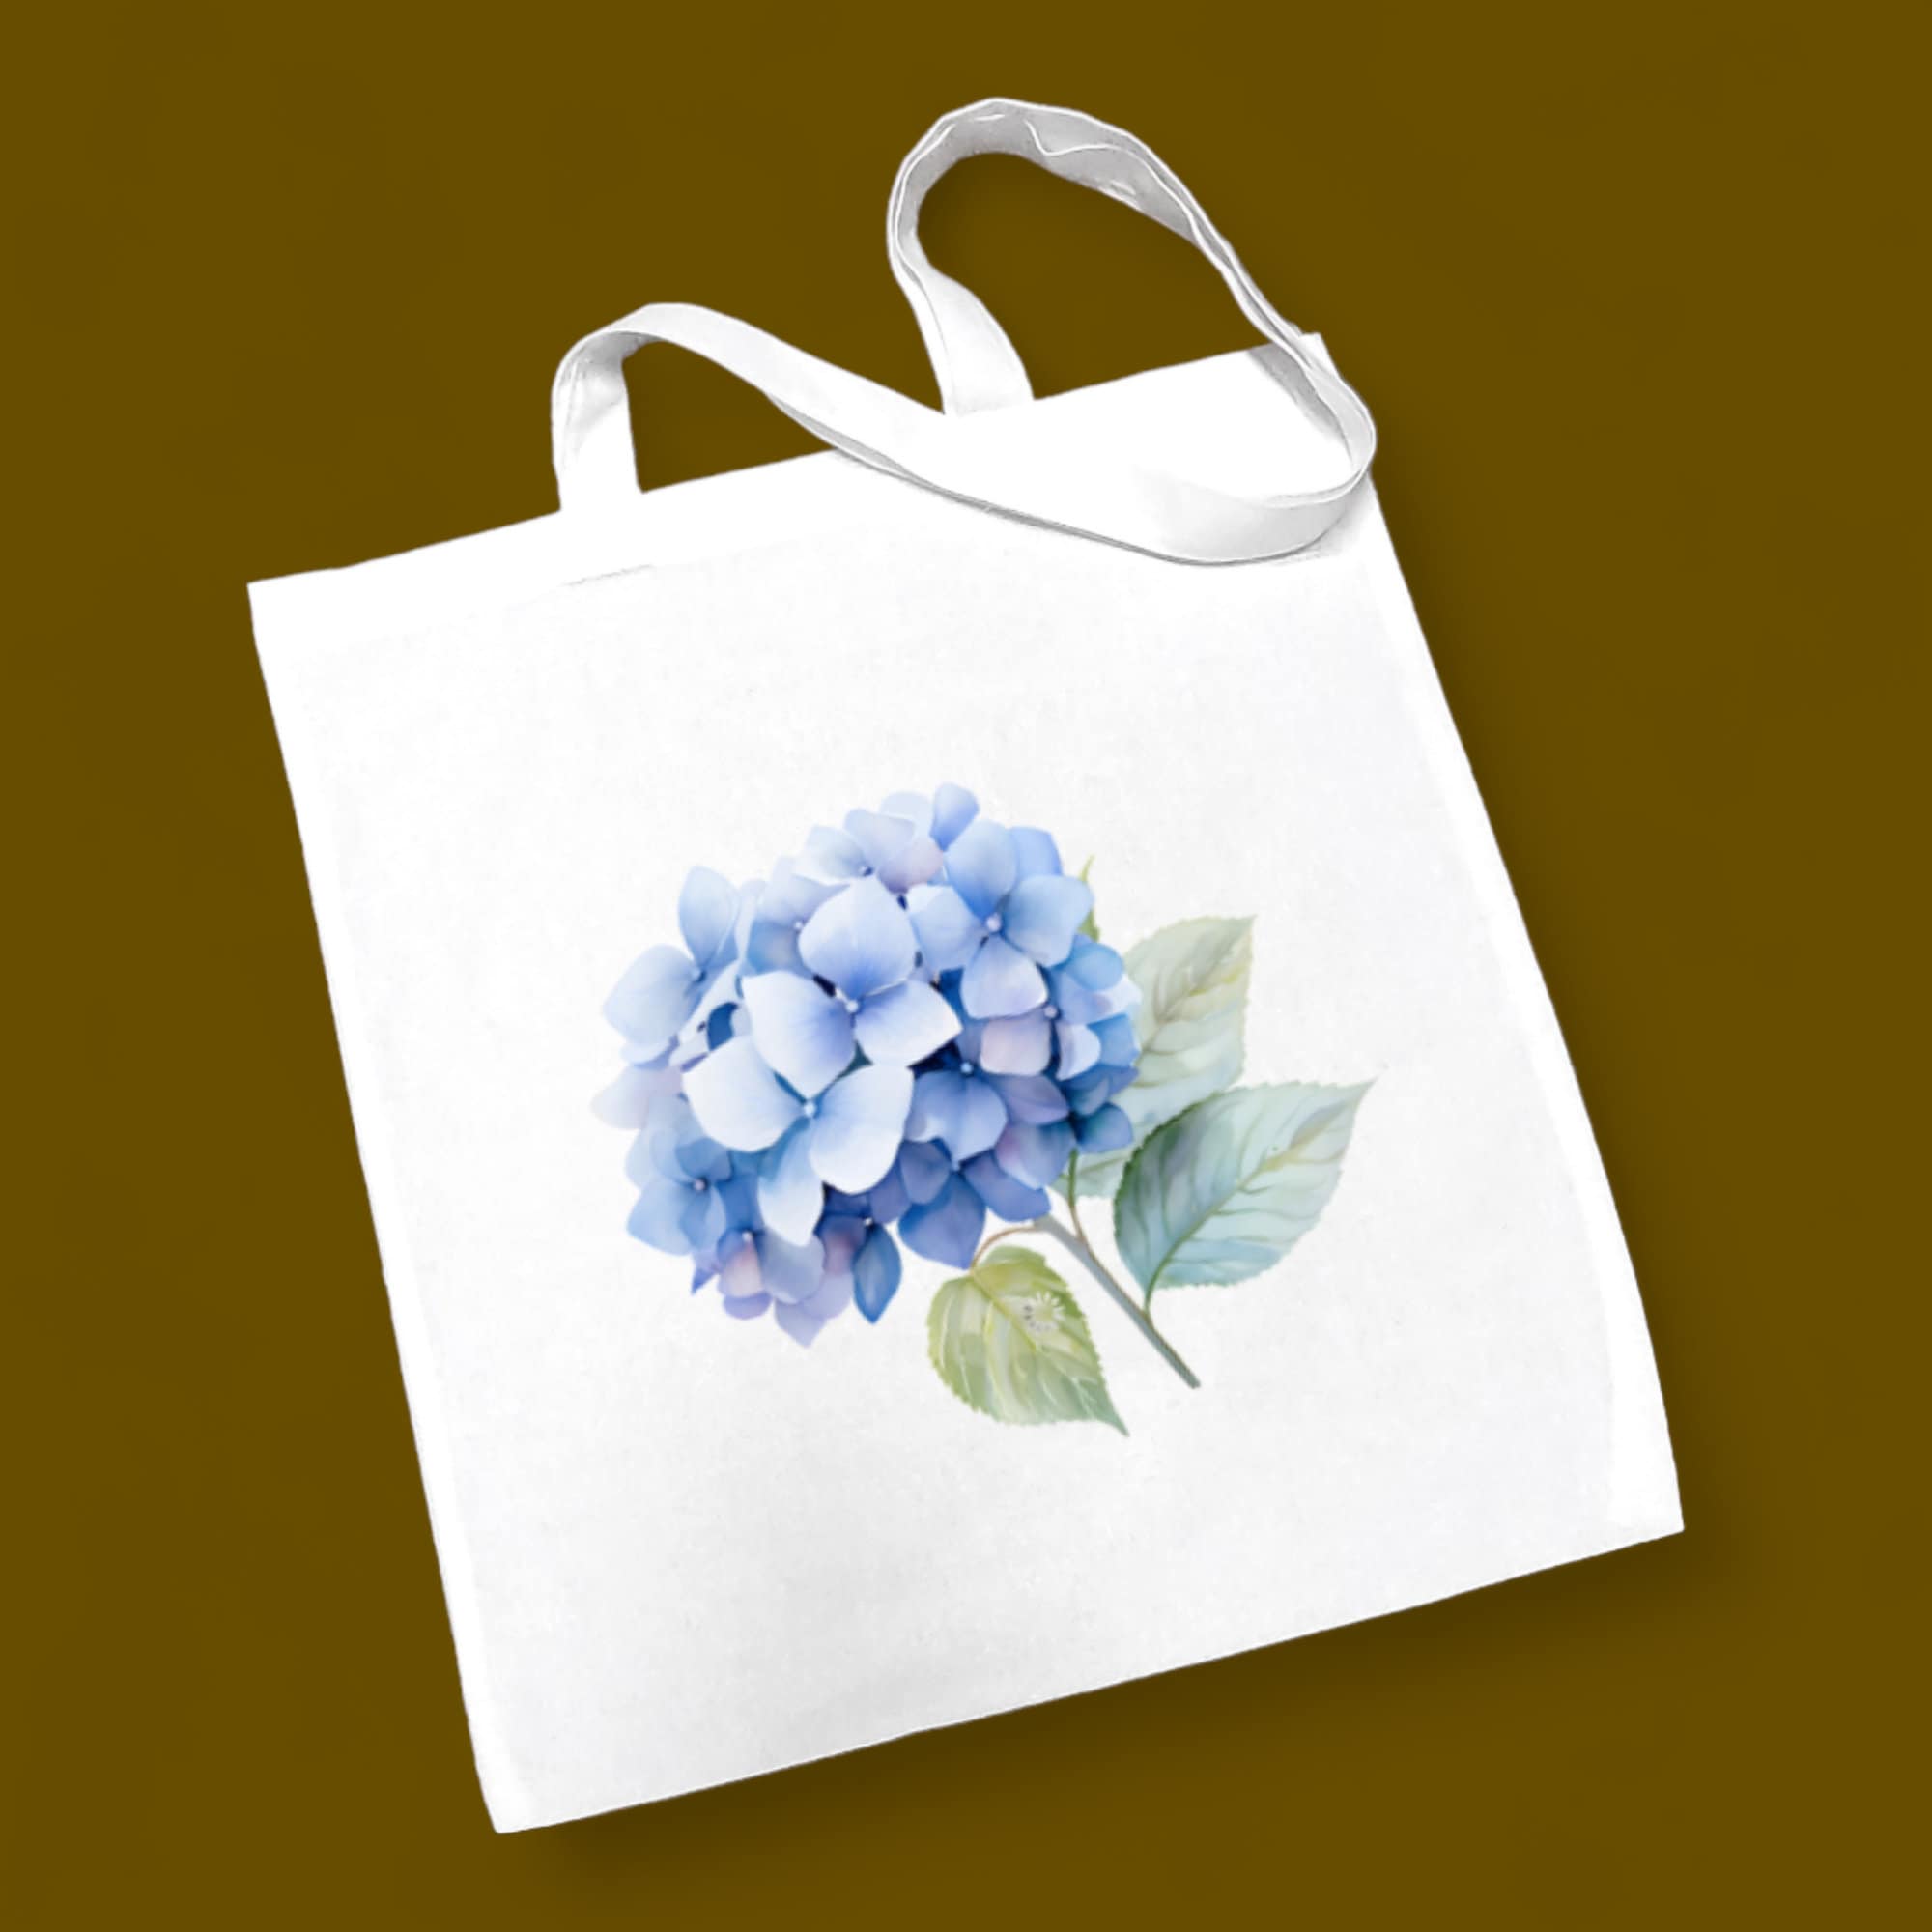 Stofftasche, Stoffbeutel, Einkaufstasche, Tasche, Geschenk zum Muttertag, Geburtstag, in Weiß oder Beige, "Hortensie, Blüte, blau"